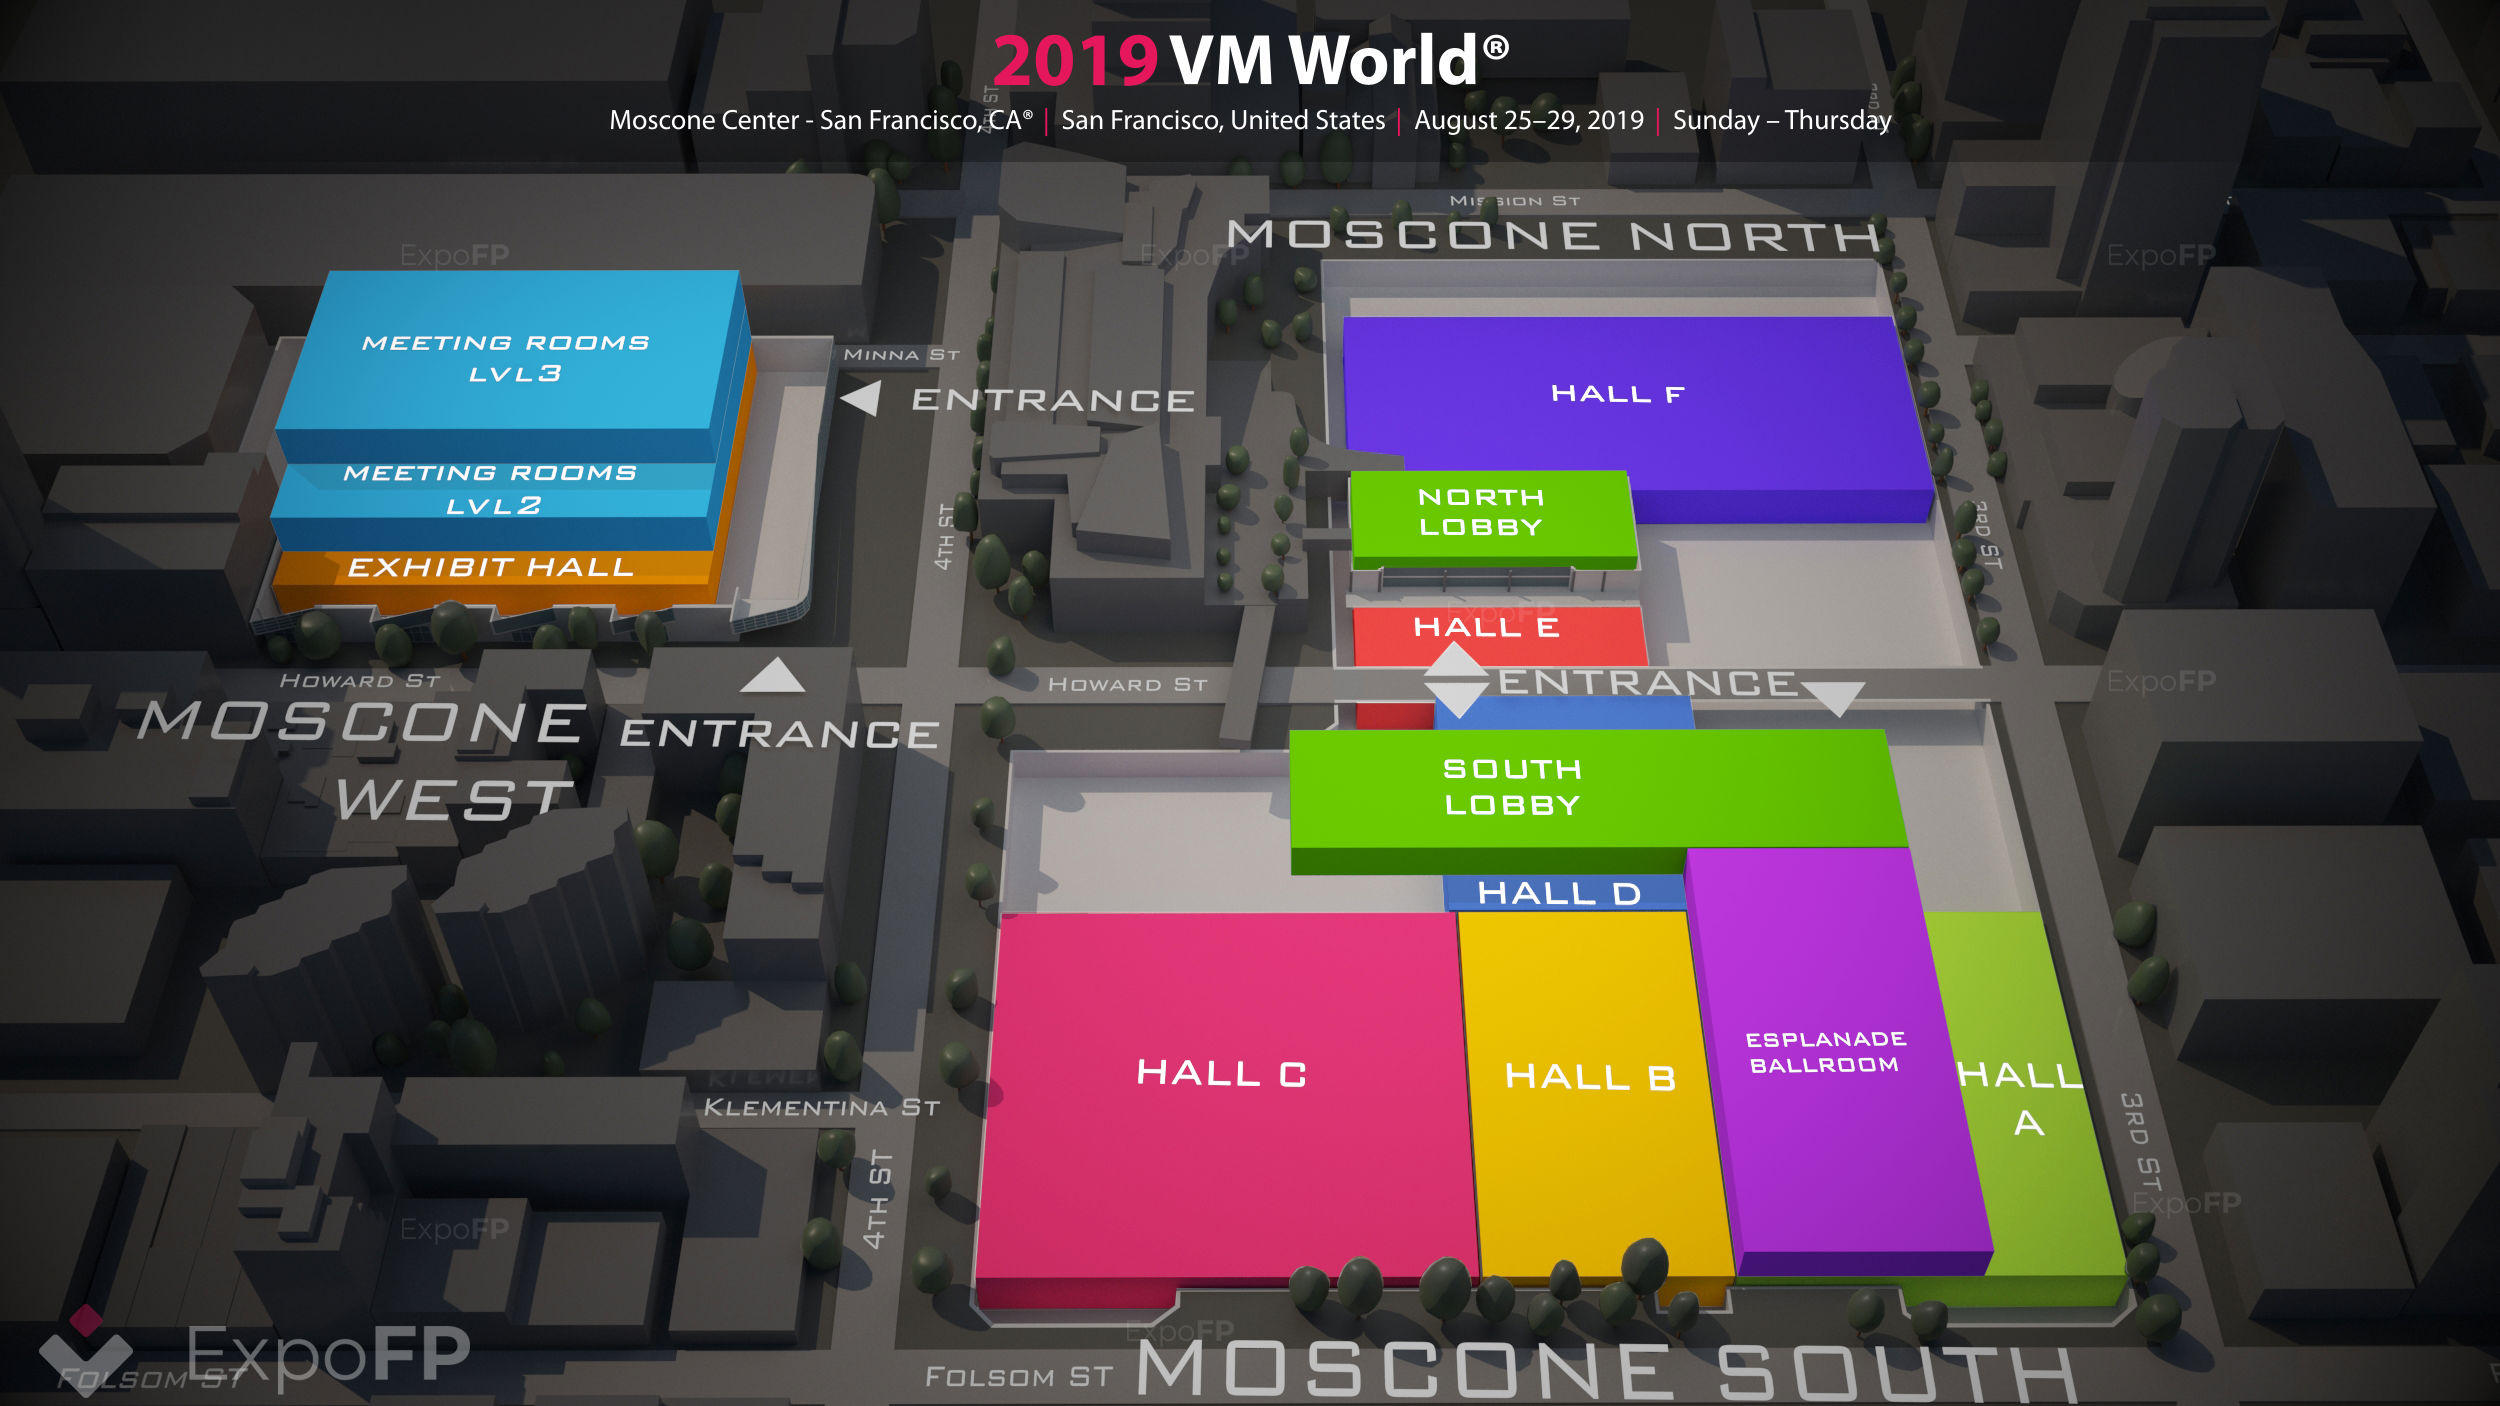 VM World 2019 3D floor plan